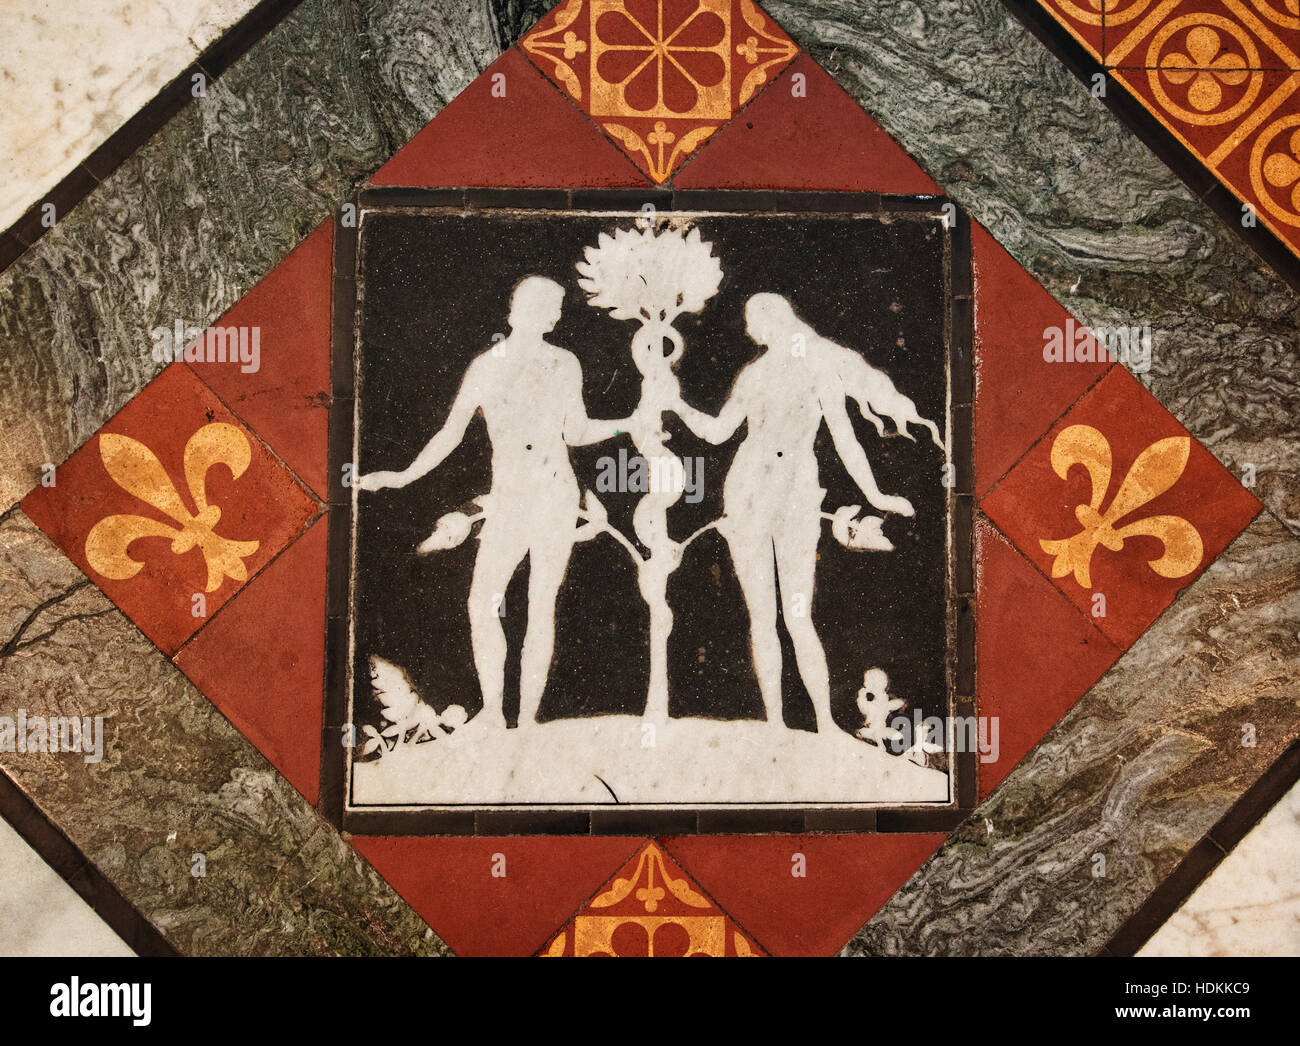 Adam und Eva mit die Schlange in schwarz / weiß Inlay Boden Fliesen Fliesen und Marmor bei Gloucester Cathedral Gloucestershire UK Stockfoto